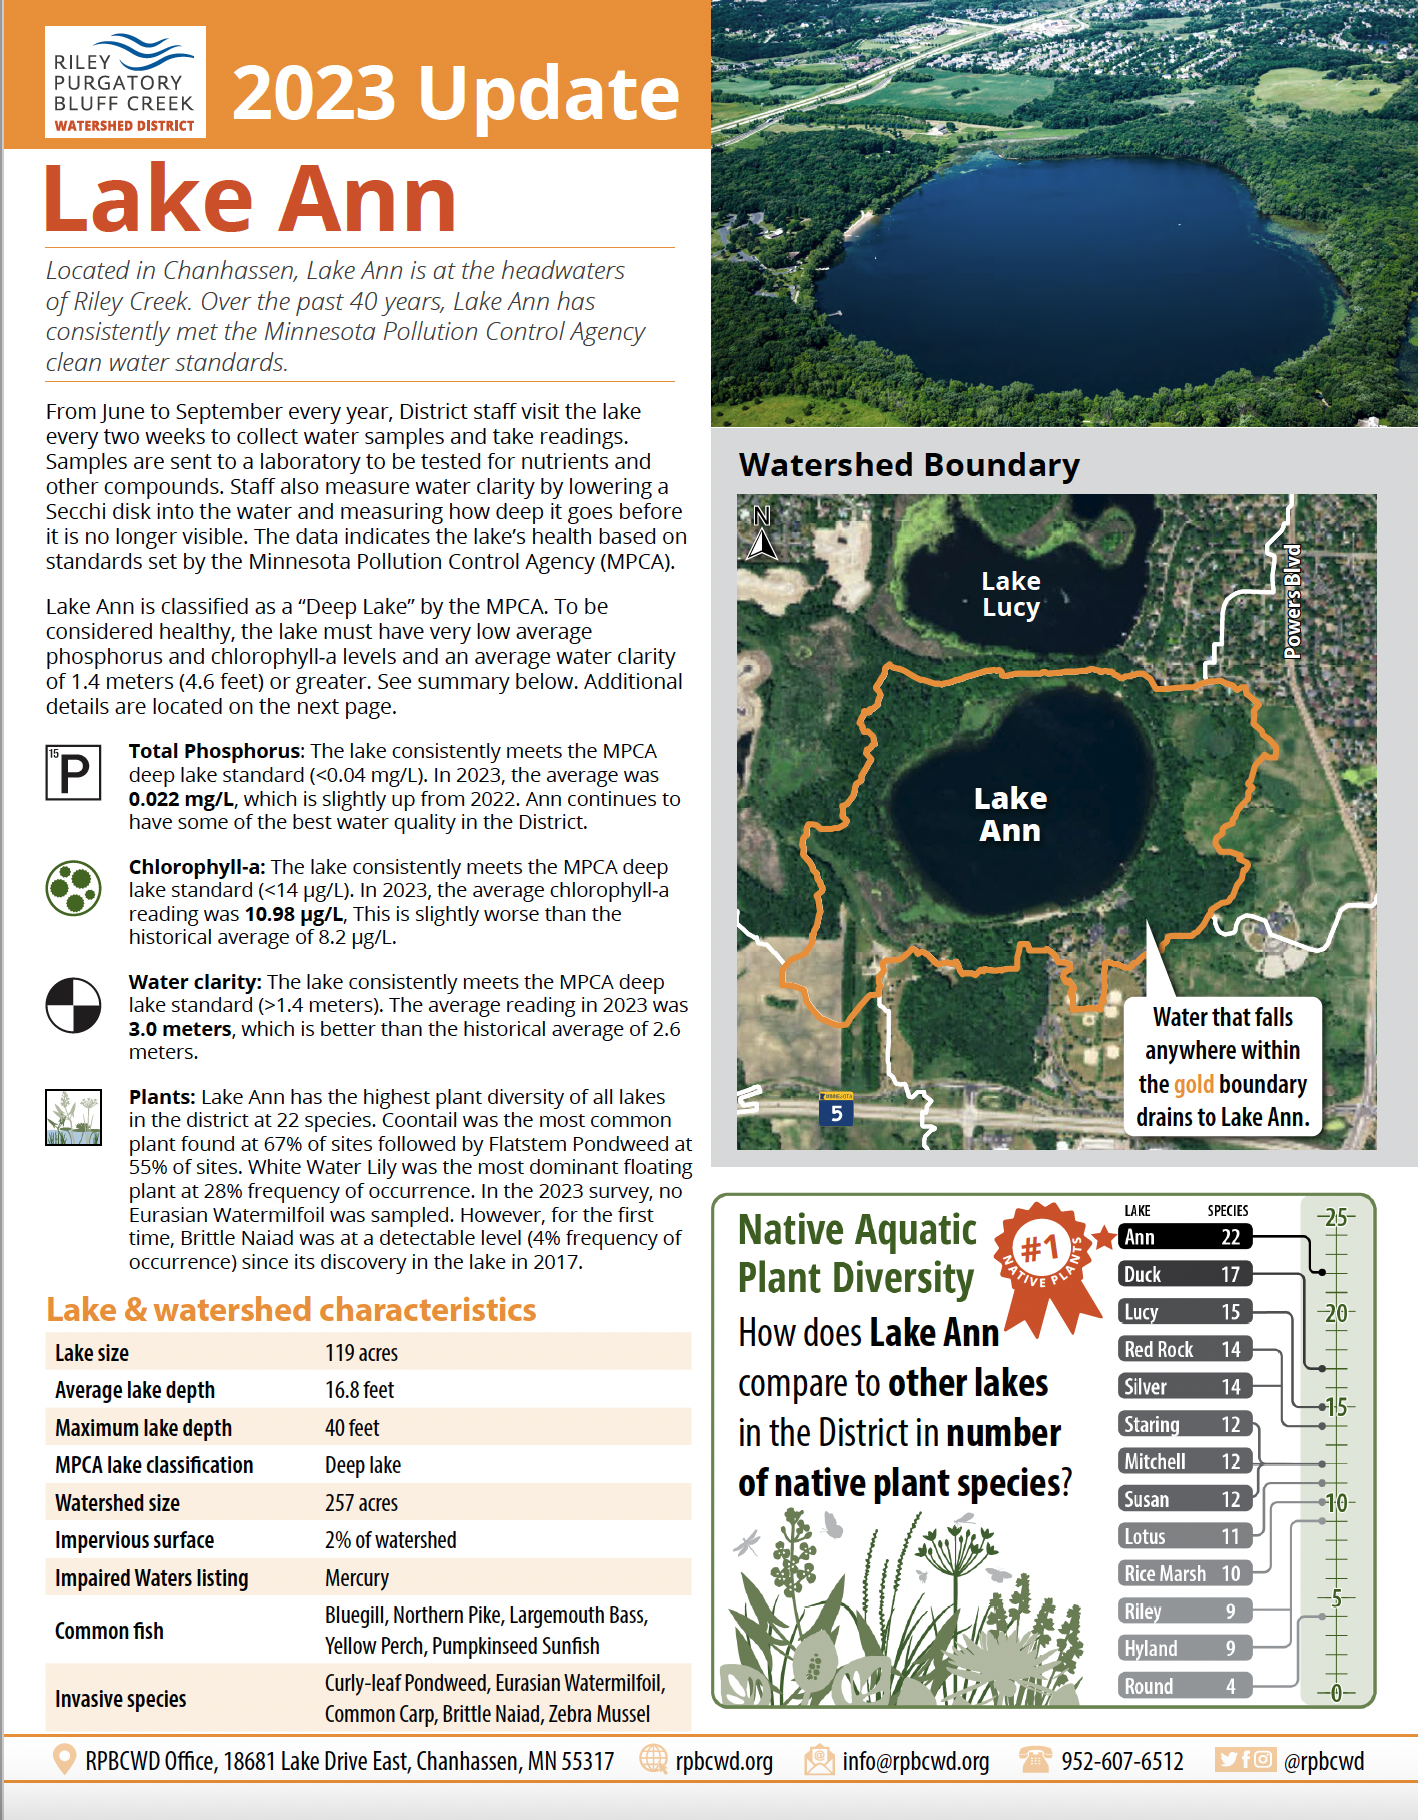 Screenshot 2022 Lake Ann factsheet_page 1.png